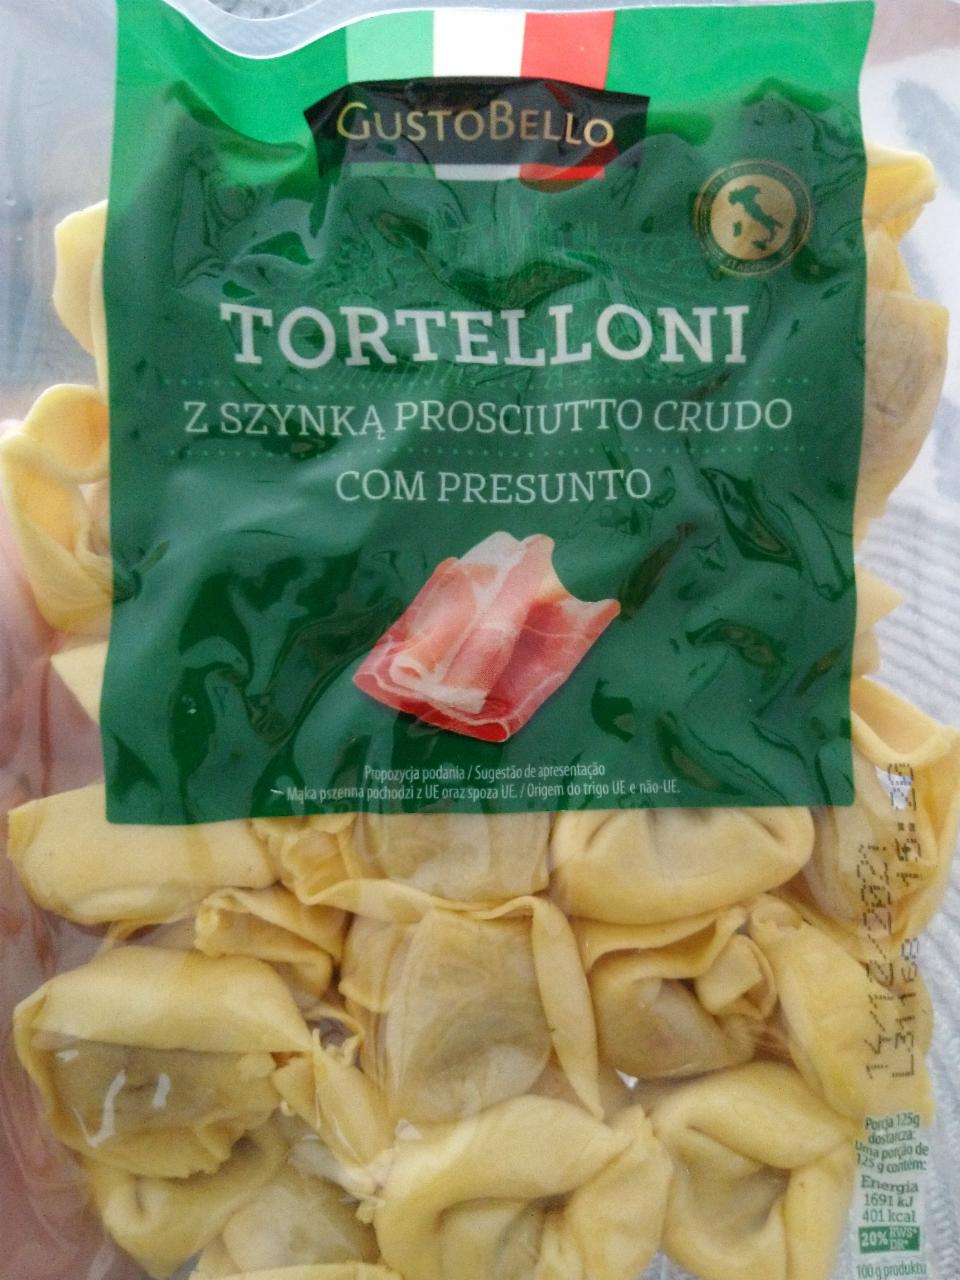 Zdjęcia - Tortelloni z szynką prosciutto crudo com presunto gustobello